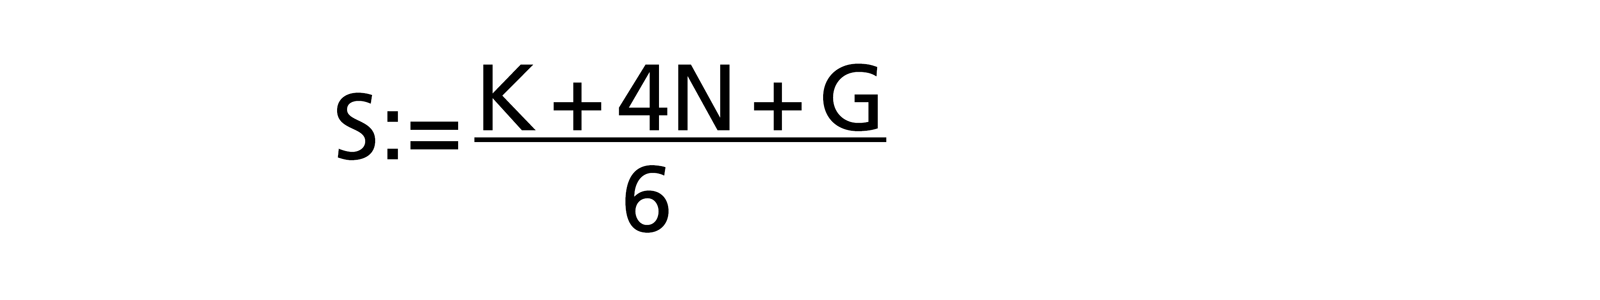 Schätzformel für die Beta-Verteilung: S:= (K + 4N + G) / 6